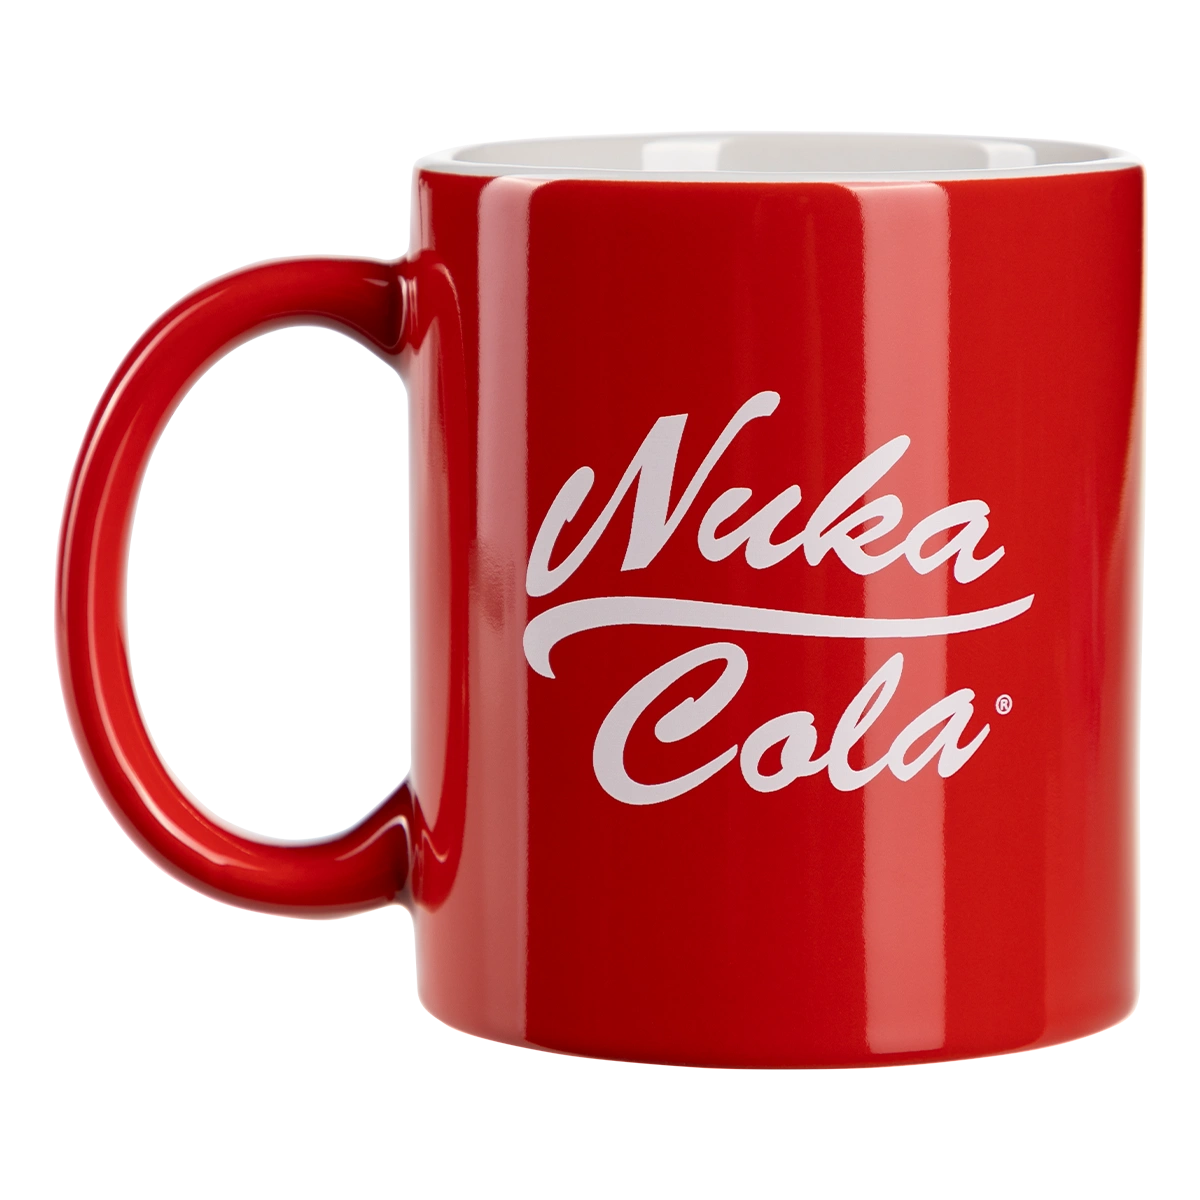 Fallout Mug "Nuka Cola" Image 2